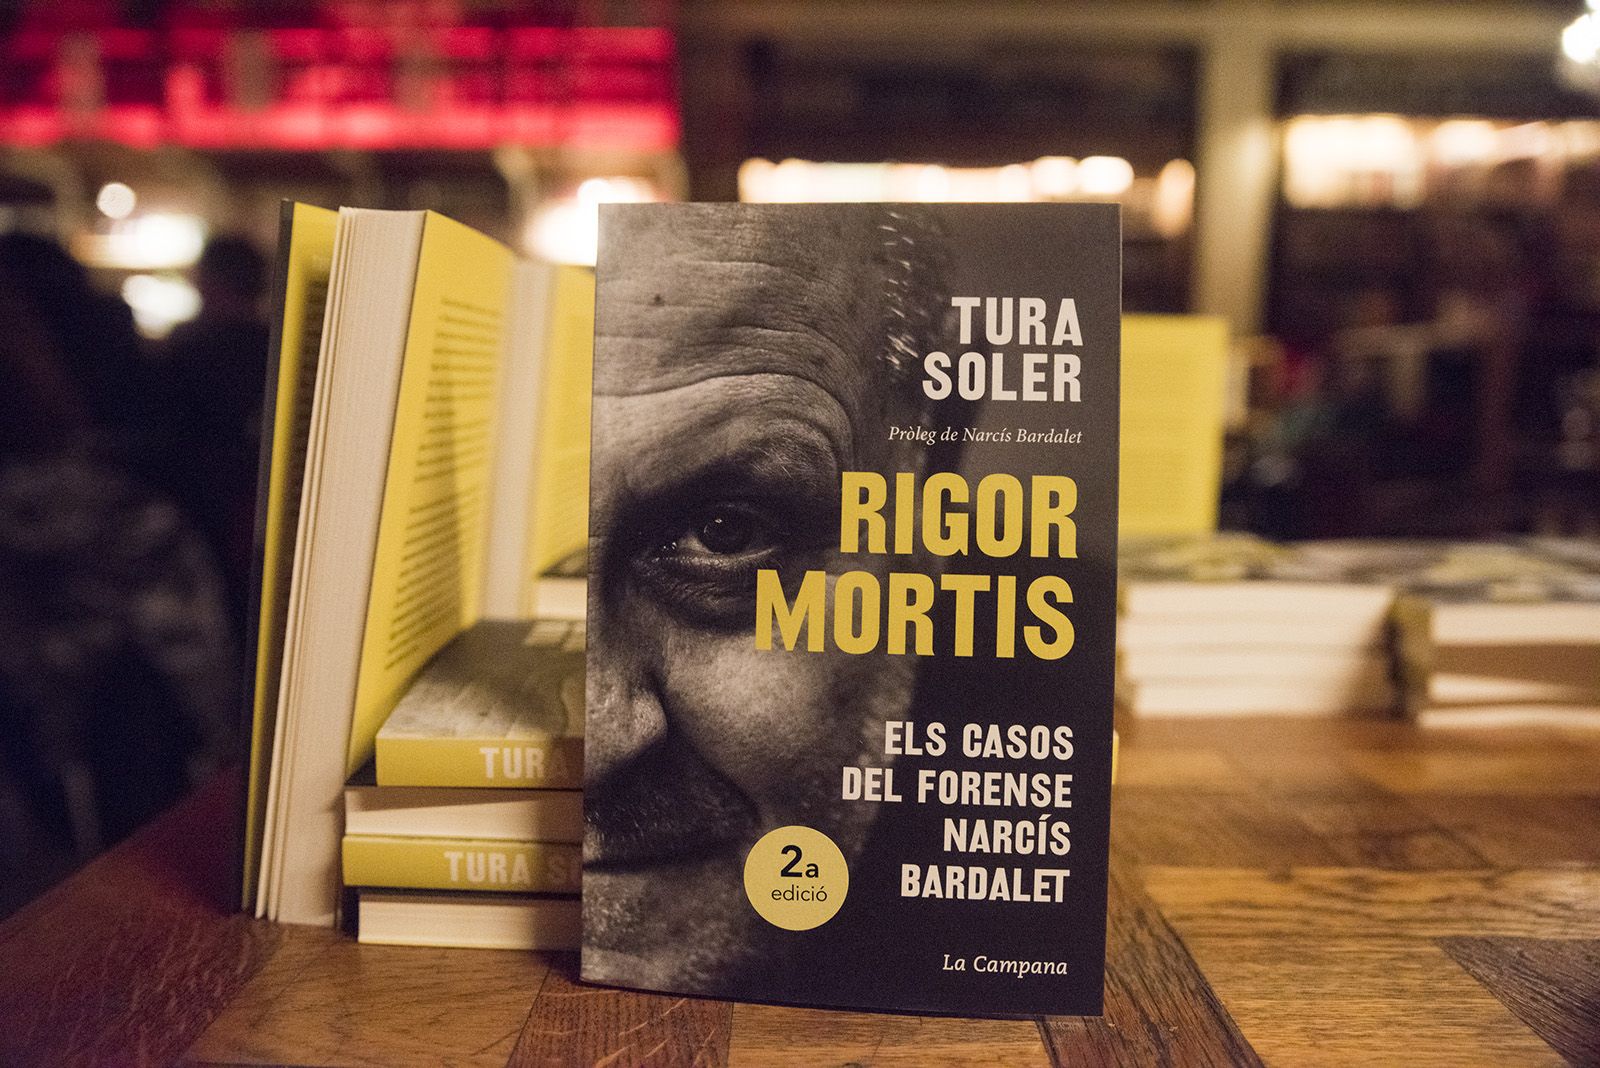 Presentació del llibre 'Rigor Mortis' de Tura Soler. FOTO: Bernat Millet.